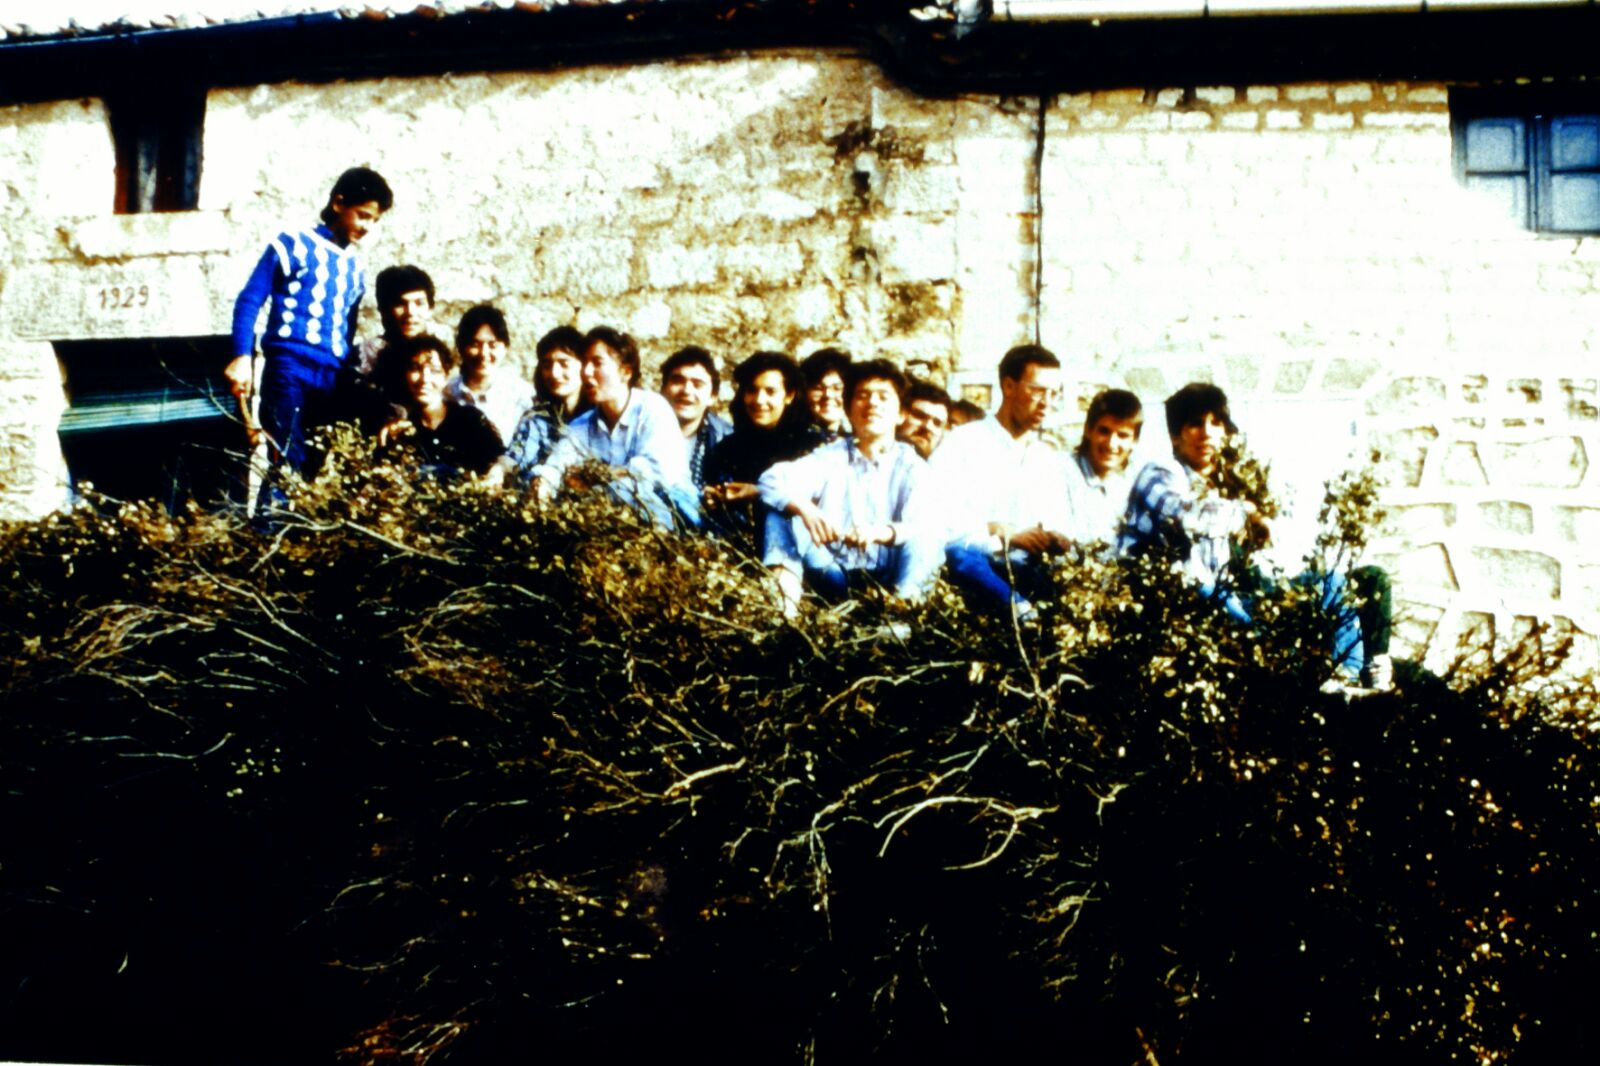 Mecerreyes, recogida de támbaras, año 1986. Foto Fernando Alonso, 1